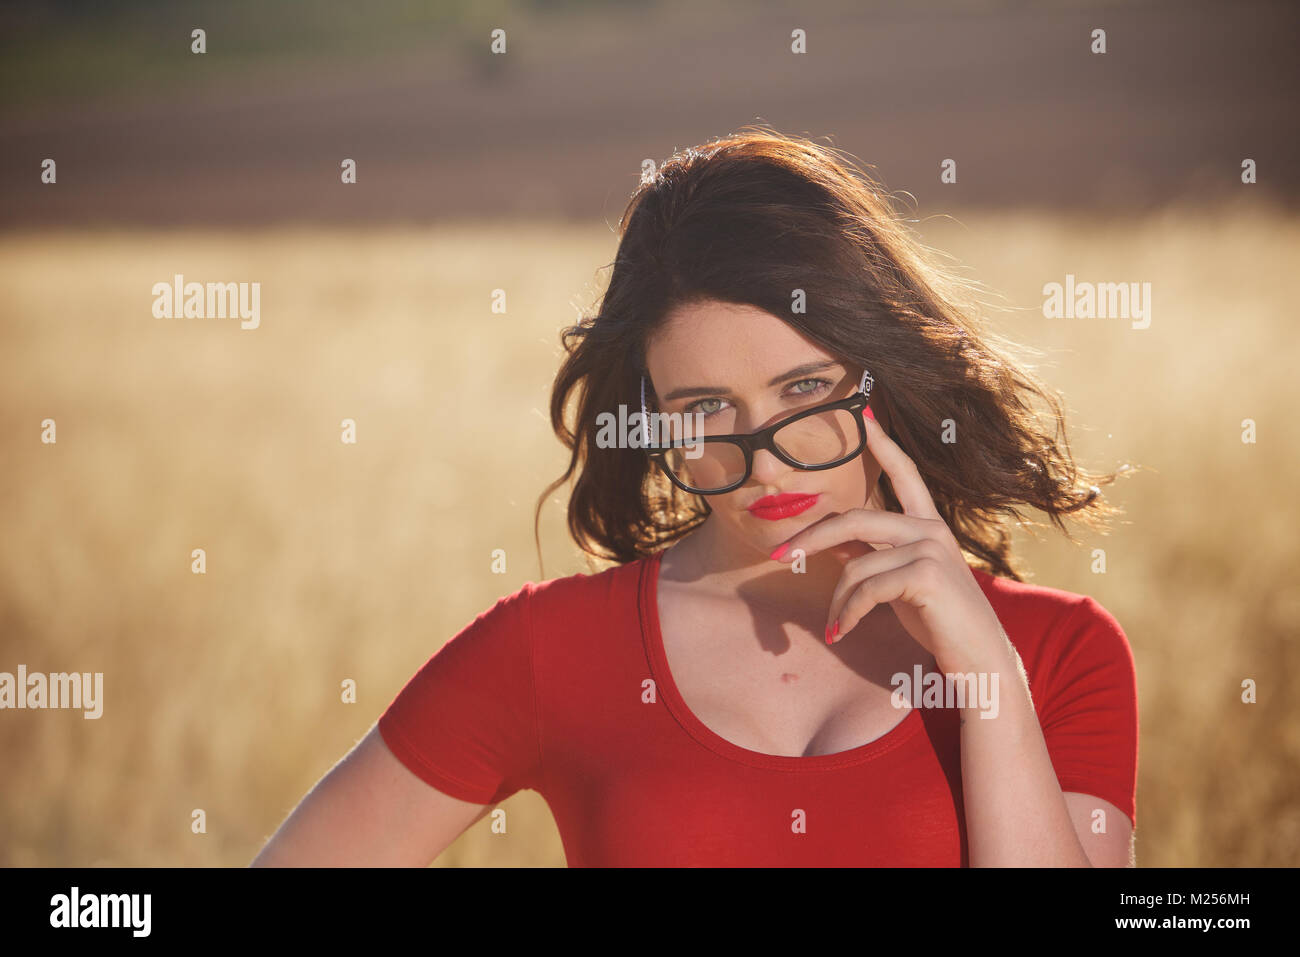 Schöne brünette Mädchen - Kopf und Schultern mit Brille und auf dem Land. Stockfoto